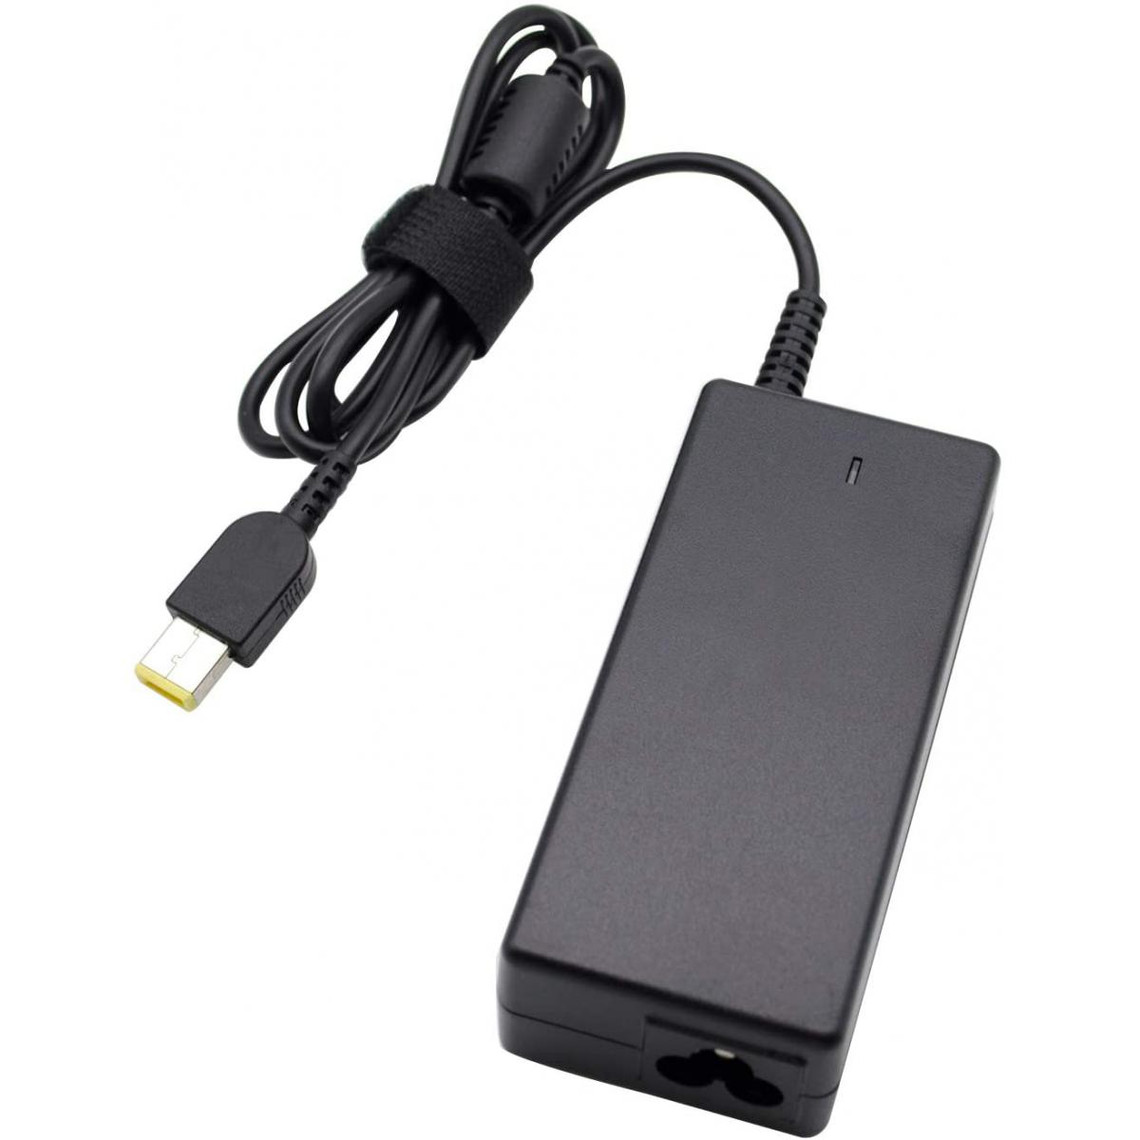 Cabling CABLING®Prémium Bloc d'alimentation chargeur pour ordinateur portable Lenovo Yoga 2 11 11s 13 Yoga 2 pro series Connecte